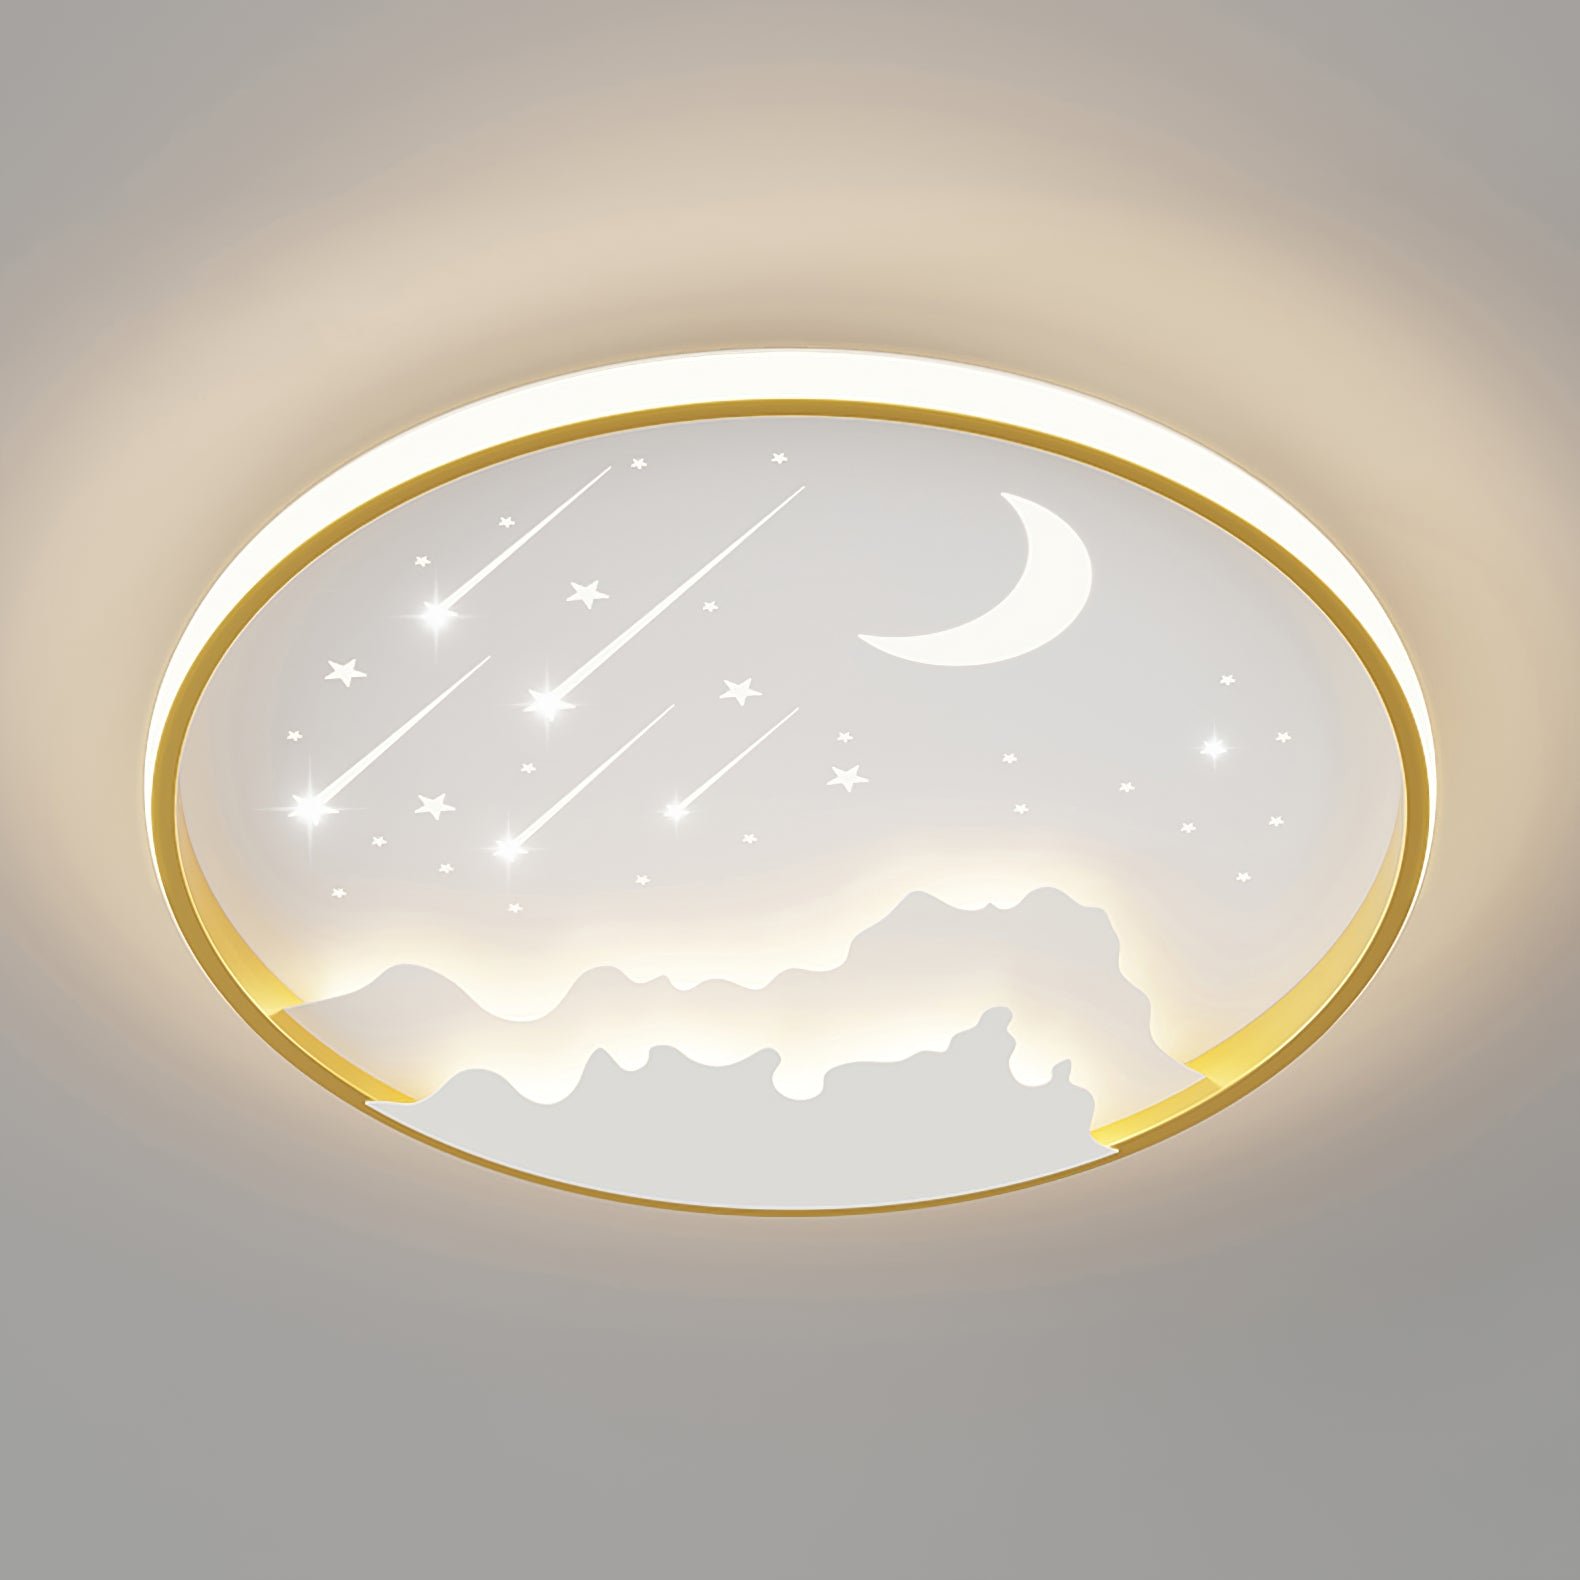 Sky Kids LED Ceiling Light ∅ 19.7″ x H 2.4″ , Dia 50cm x H 6cm , Gold , Cool Light